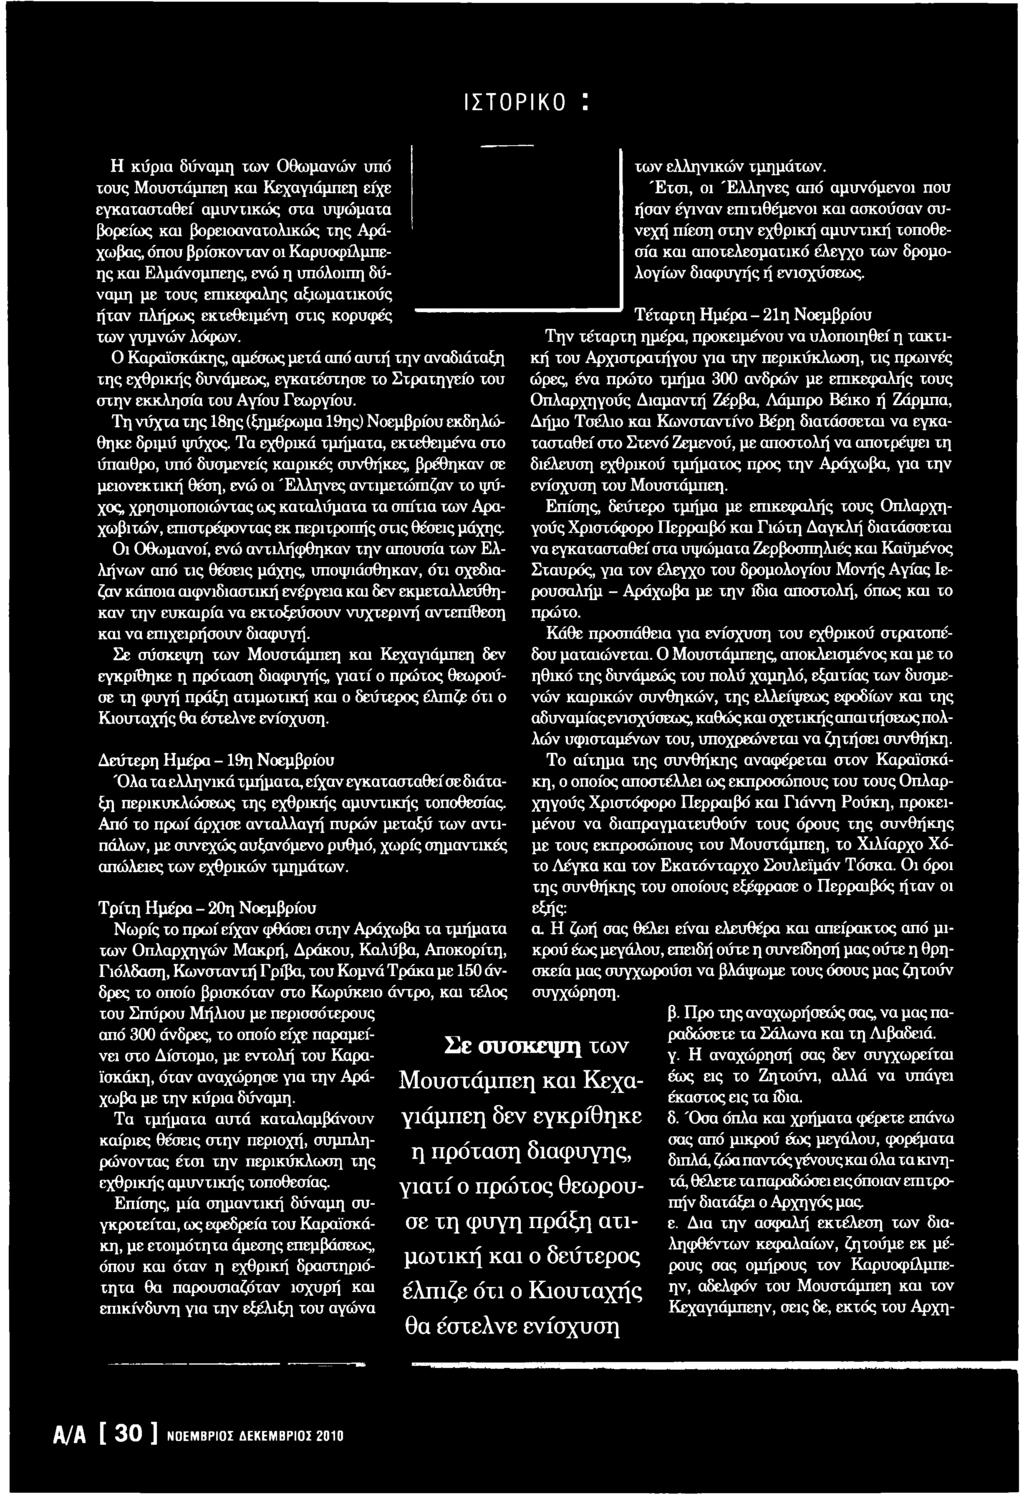 ΤΛ νασκό π η σ η. ΝΟΕΜΒΡΙΟΣ-ΔΕΚΕΜΒΡΙΟΣ 2010 / έτος 27» - PDF ΔΩΡΕΑΝ Λήψη